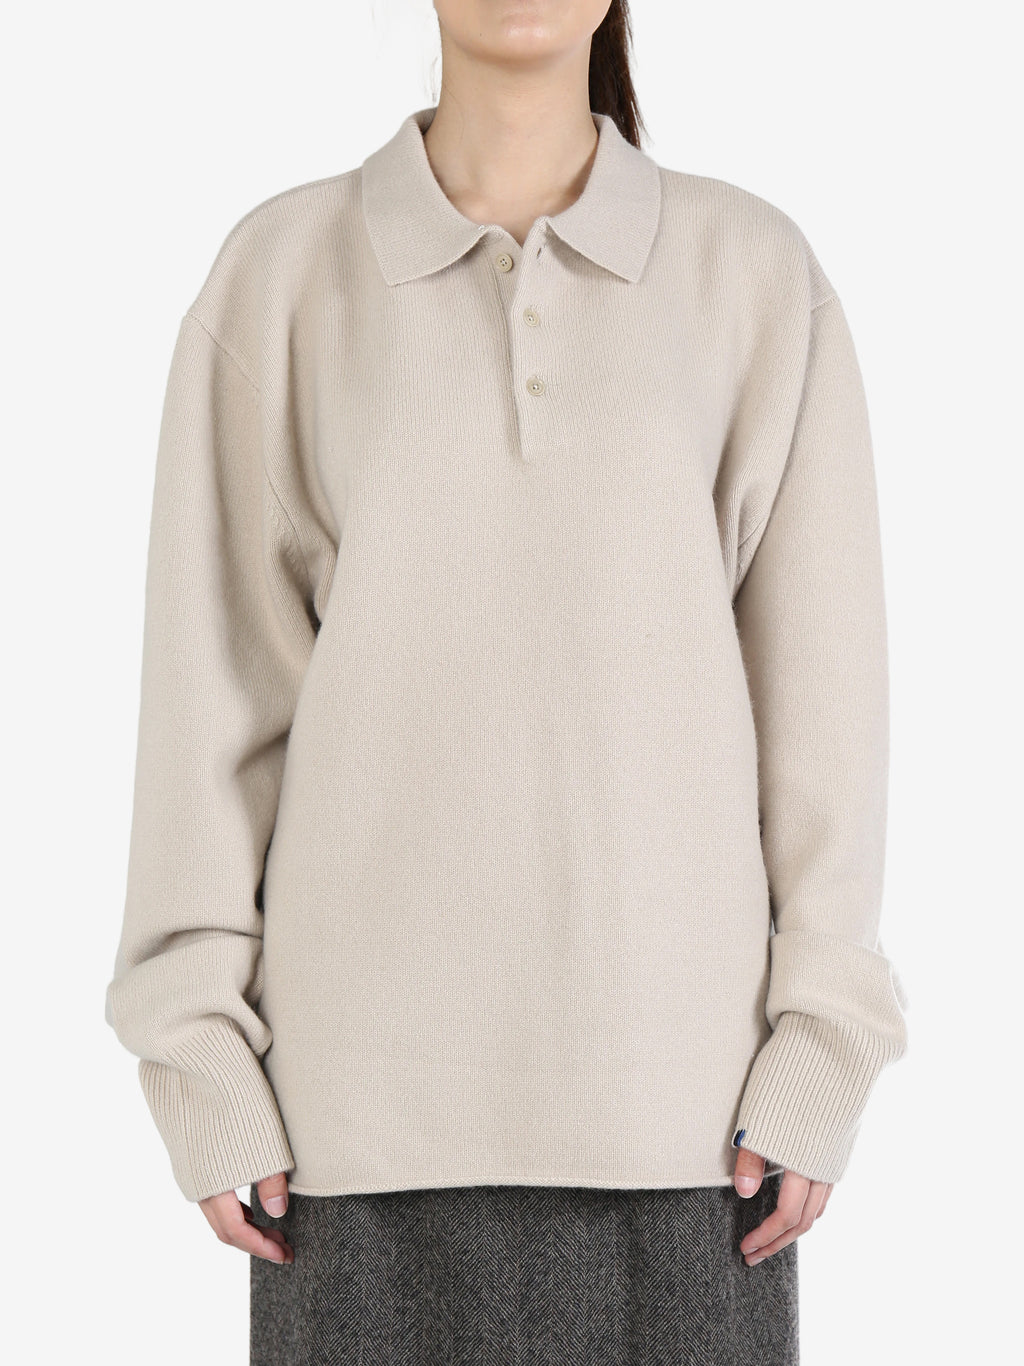 EXTREME CASHMERE Unisex N°357 Marylebone Polo Sweater